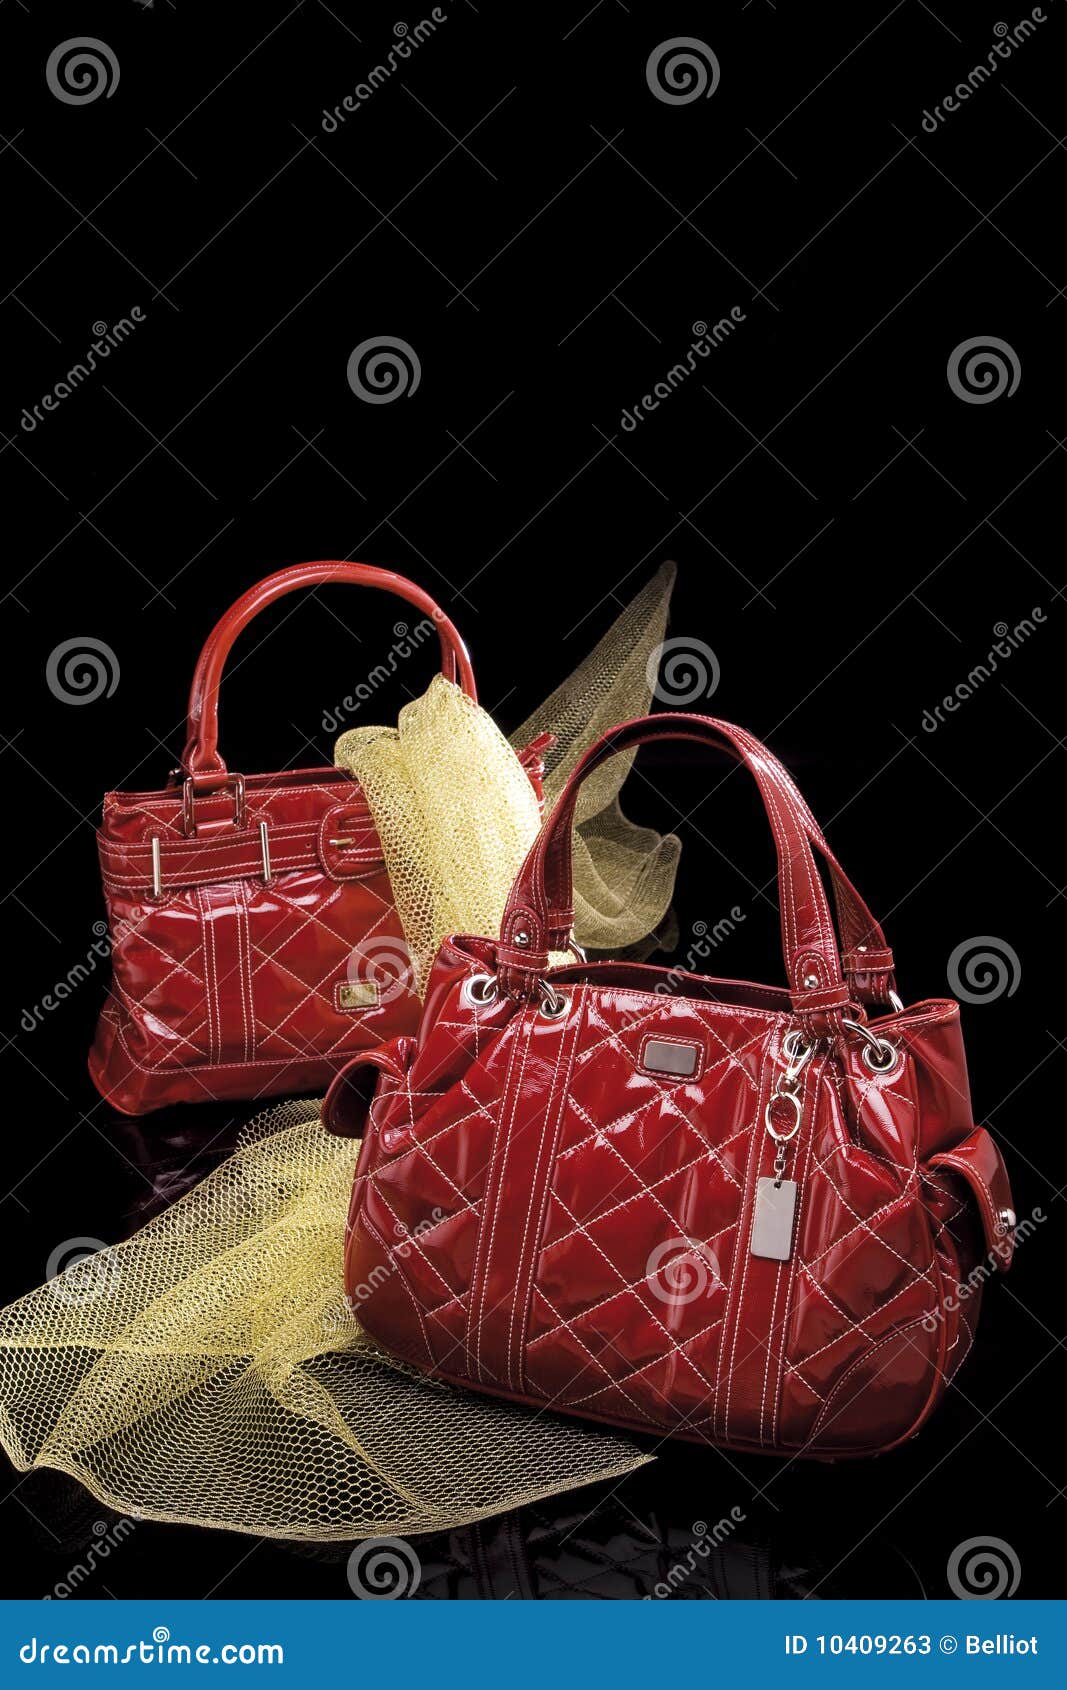 fashionable red handbags